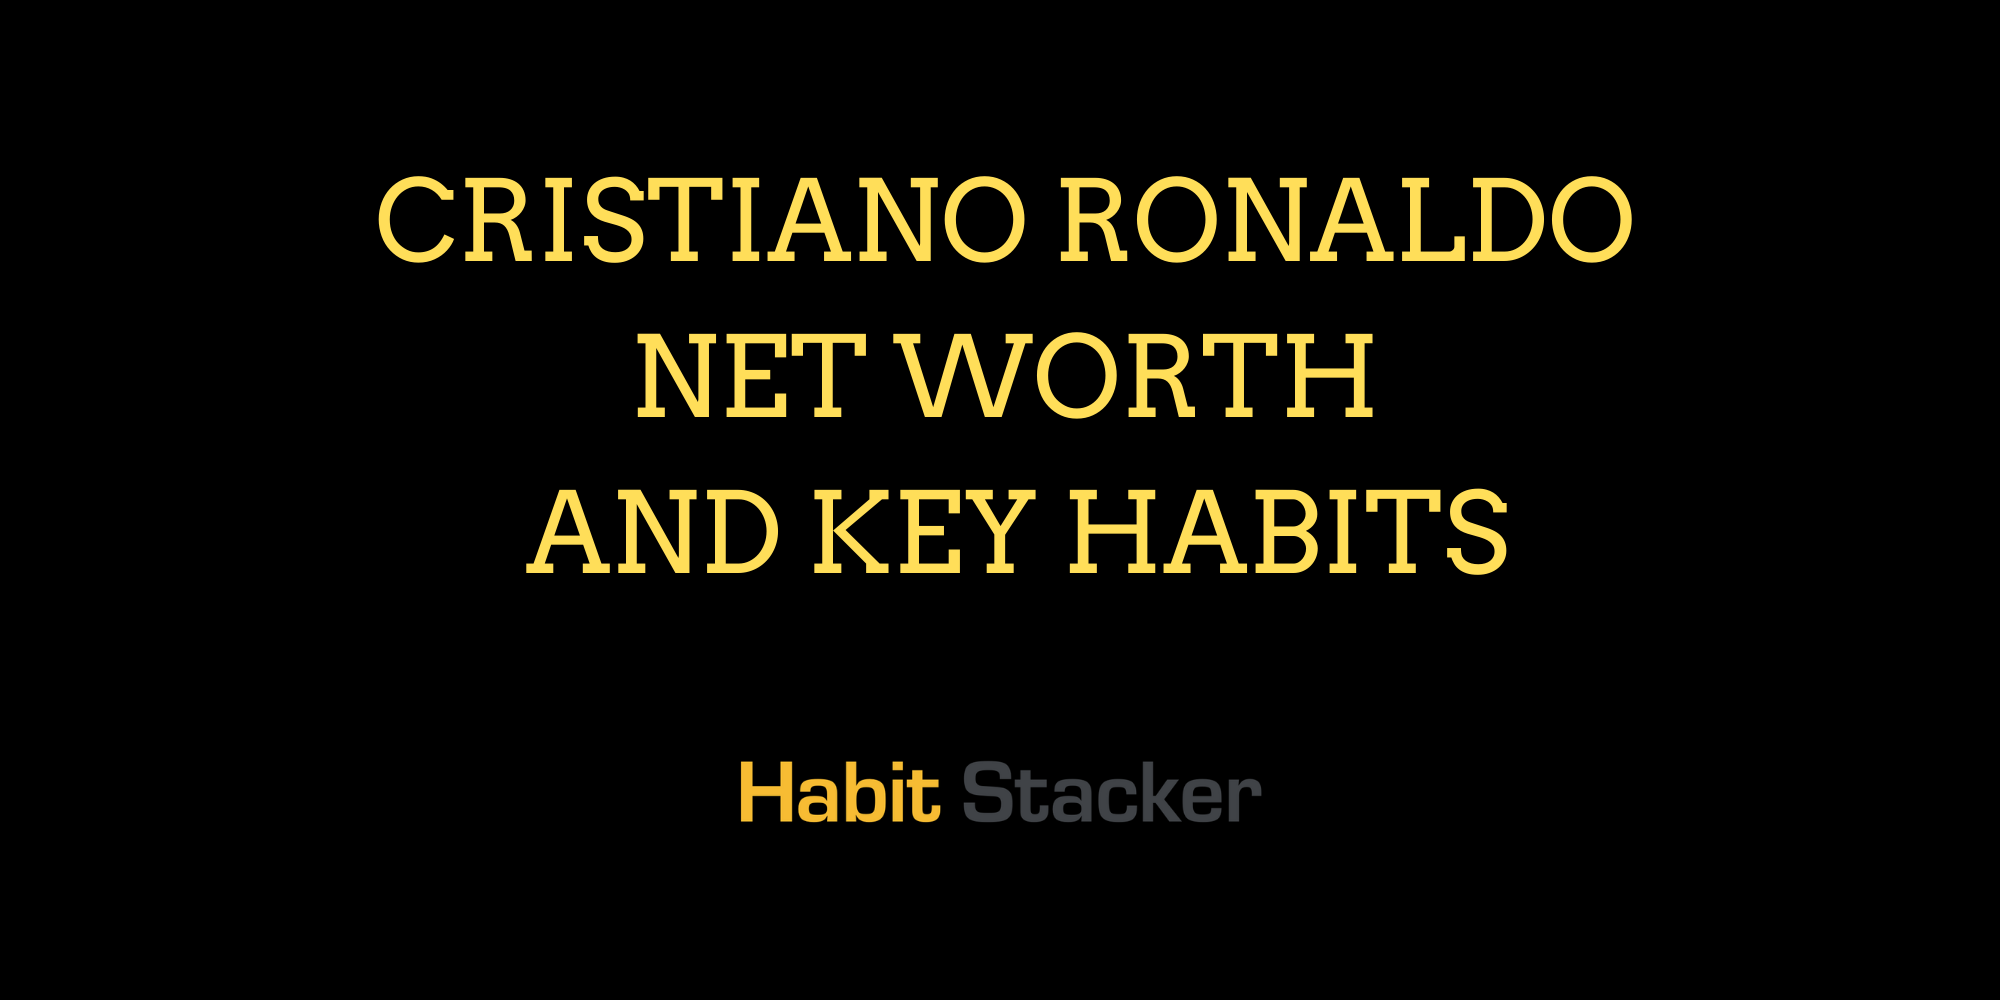 Cristiano Ronaldo Net Worth and Key Habits